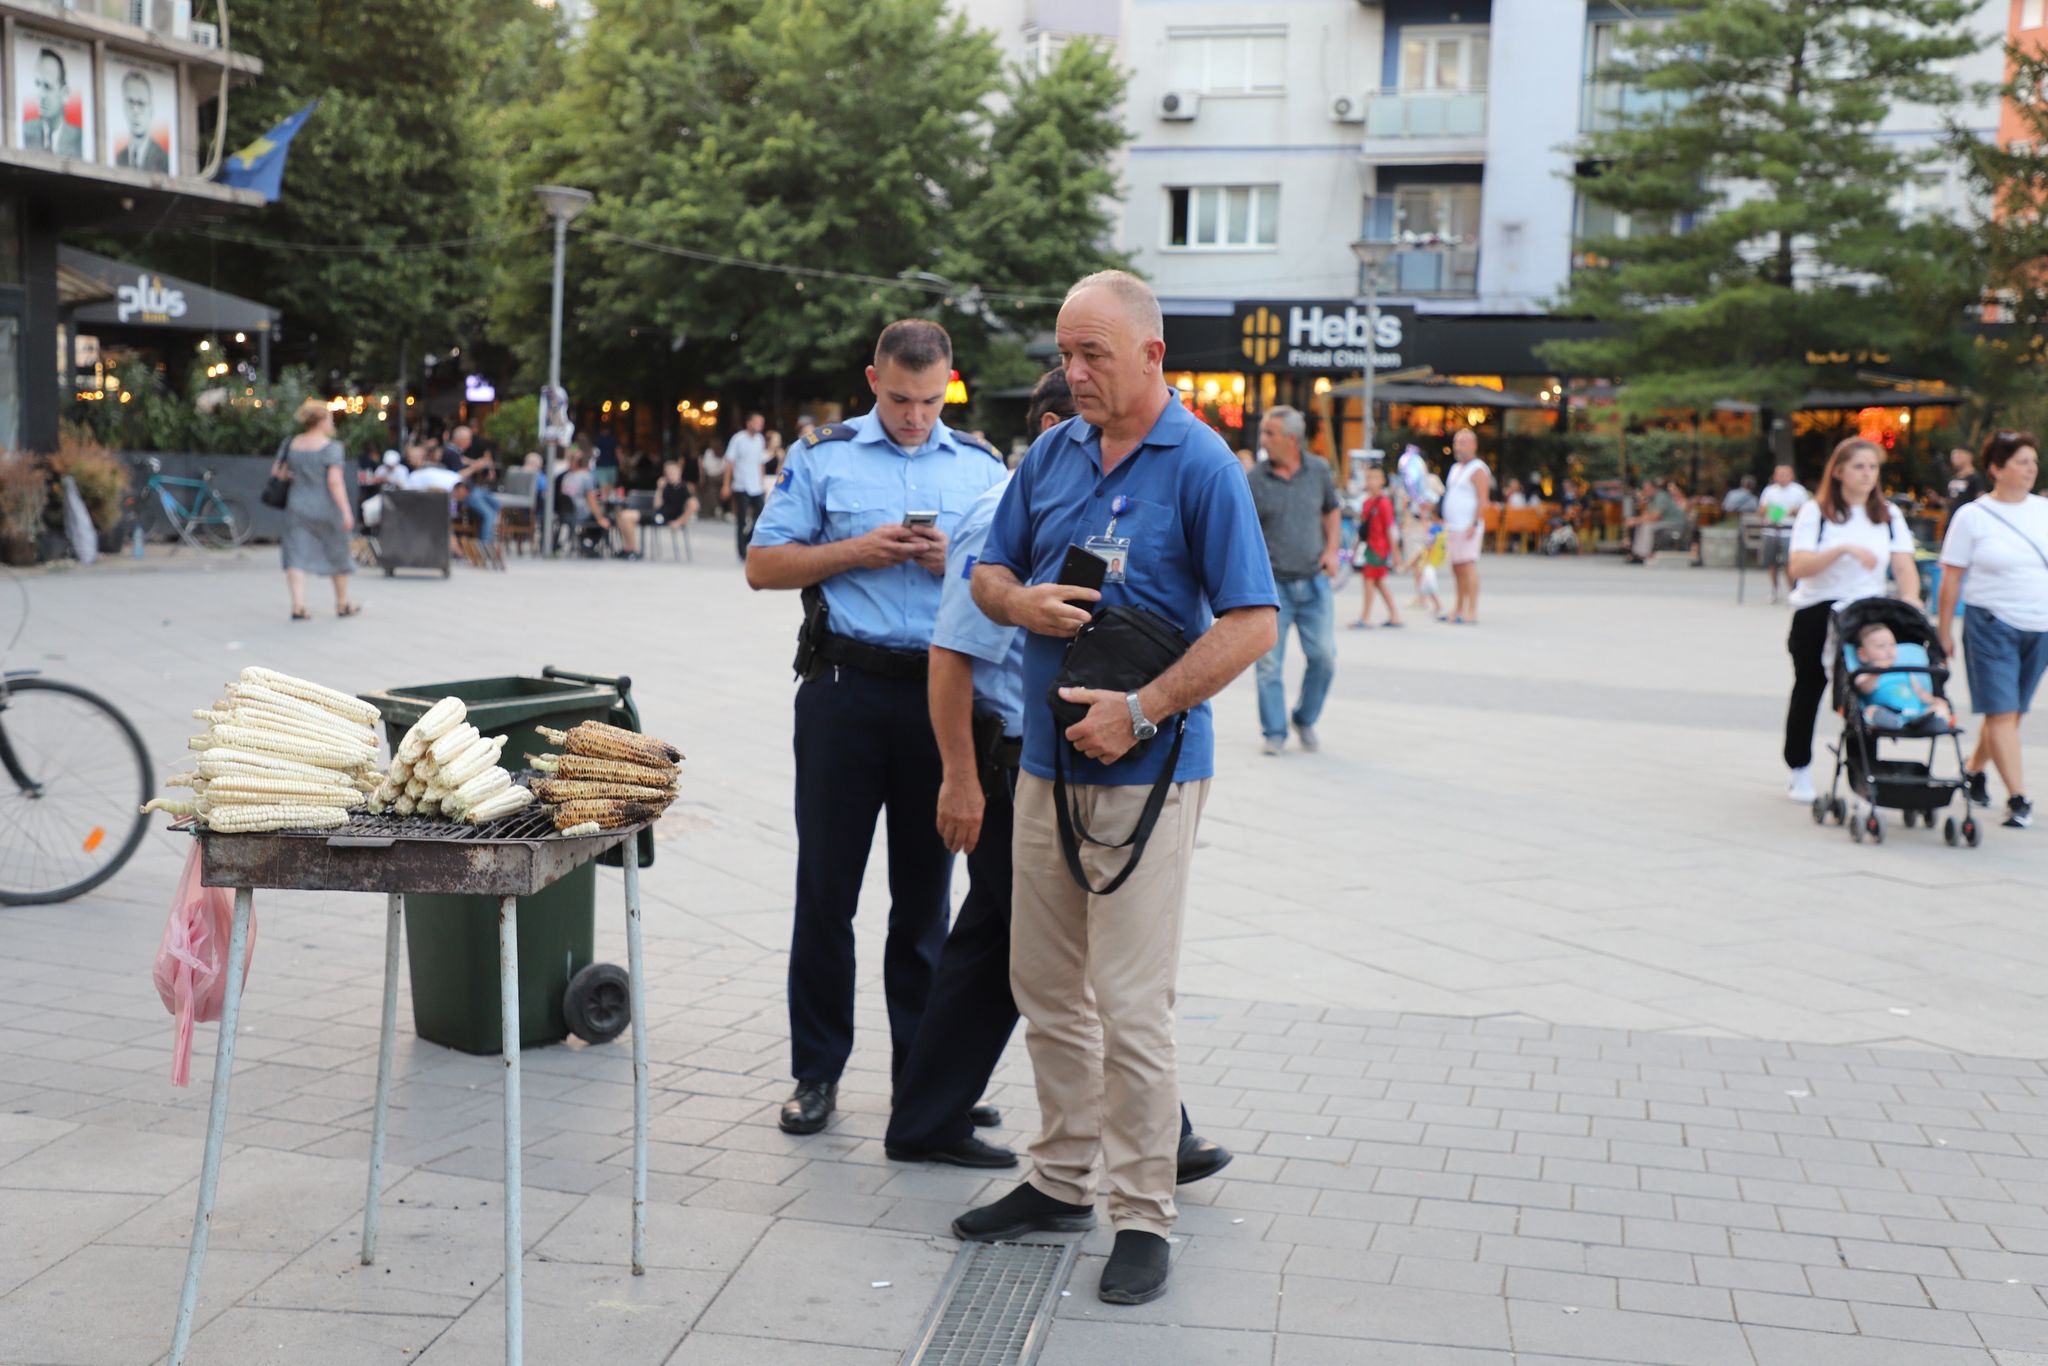 Mitrovicë: Inspekcioni në aksion kundër shitësve ilegal në sheshin e qytetit